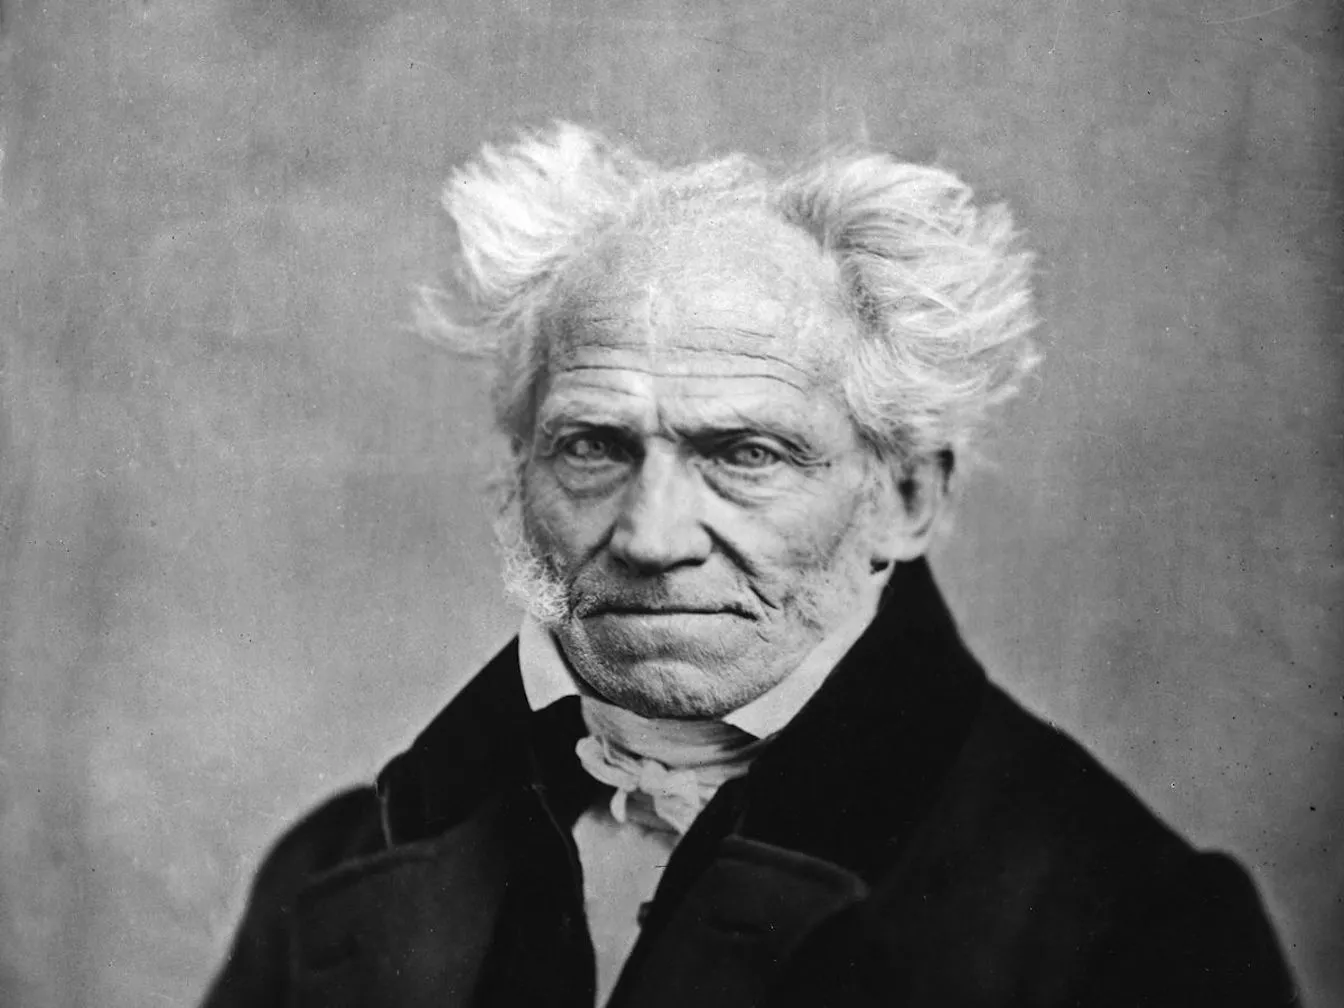 Retrat de Schopenhauer l'any 1859, el primer filòsof occidental que s'apropà a l'hinduisme i el budisme